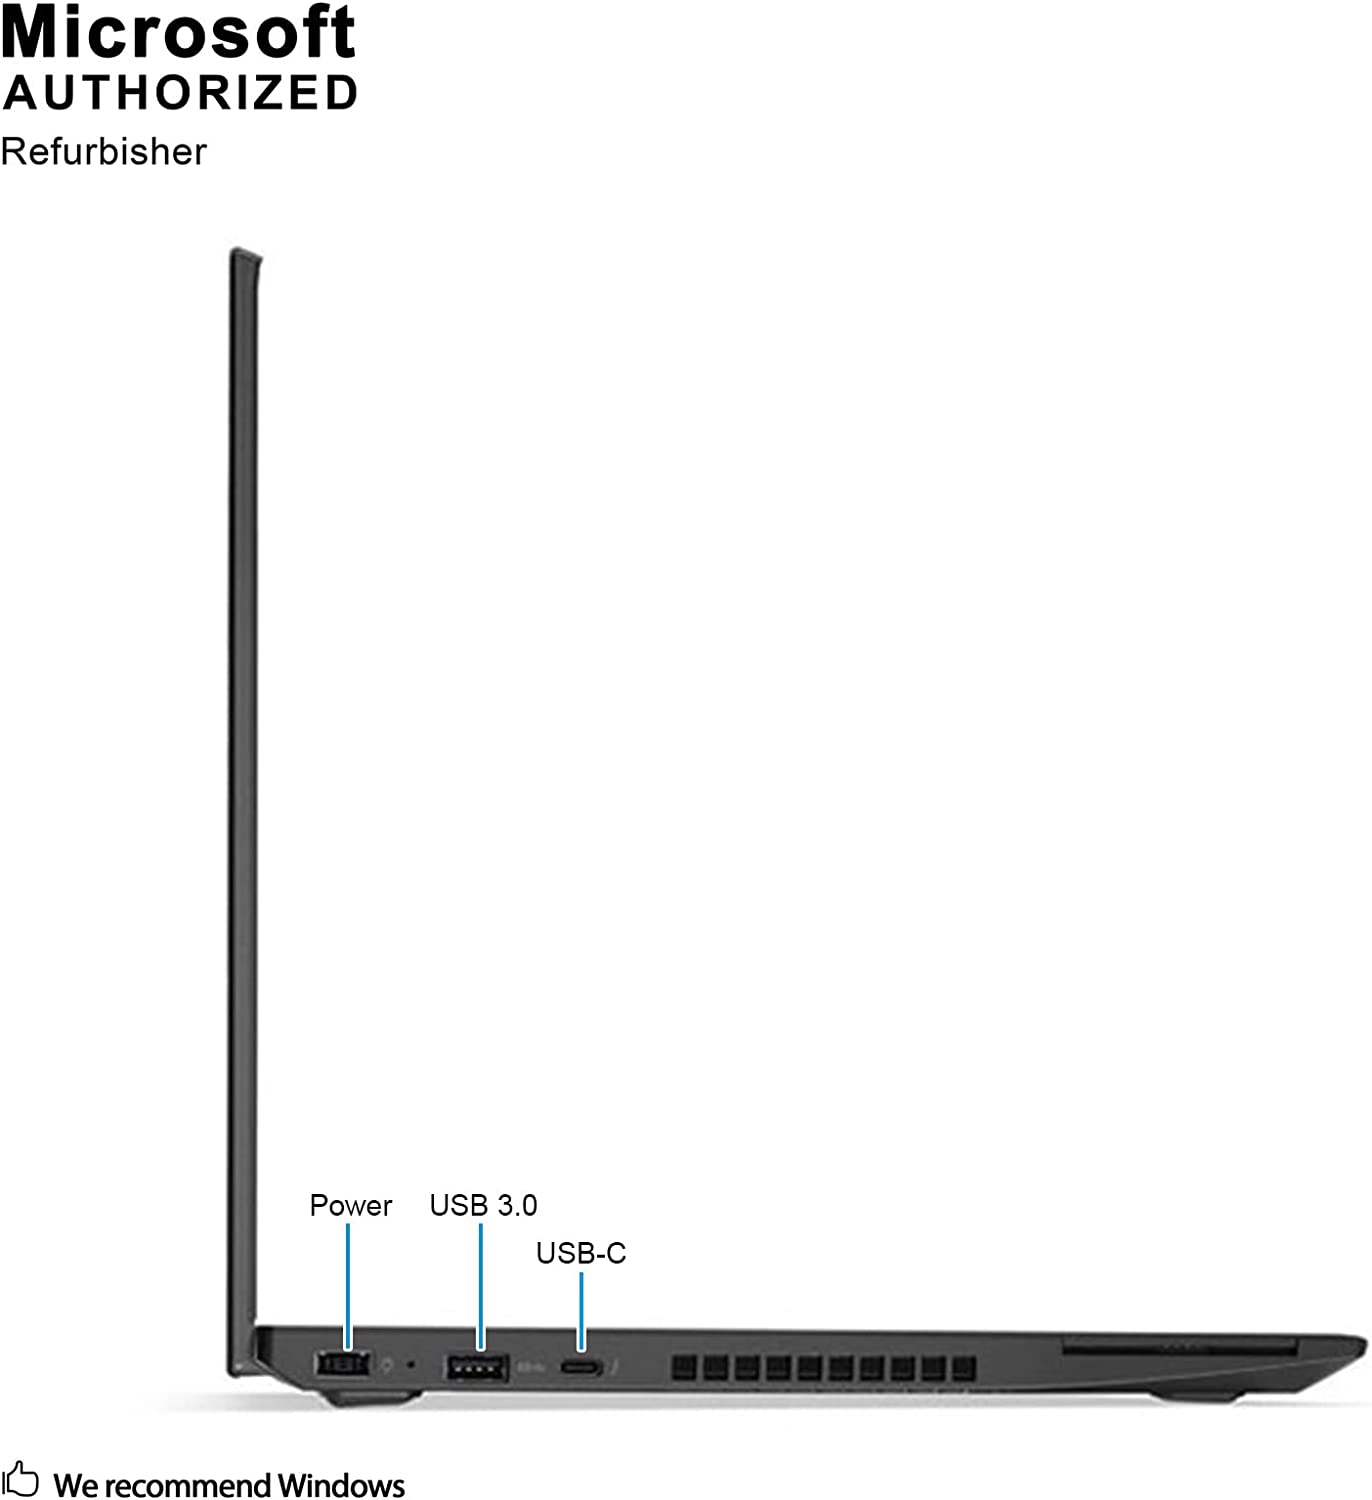 Lenovo ThinkPad T570 Intel Core i5-6300U 3.0GHz, 8GB RAM, 256GB SSD,  WiFi, Bluetooth 4.1, Win10 Pro(Renewed)